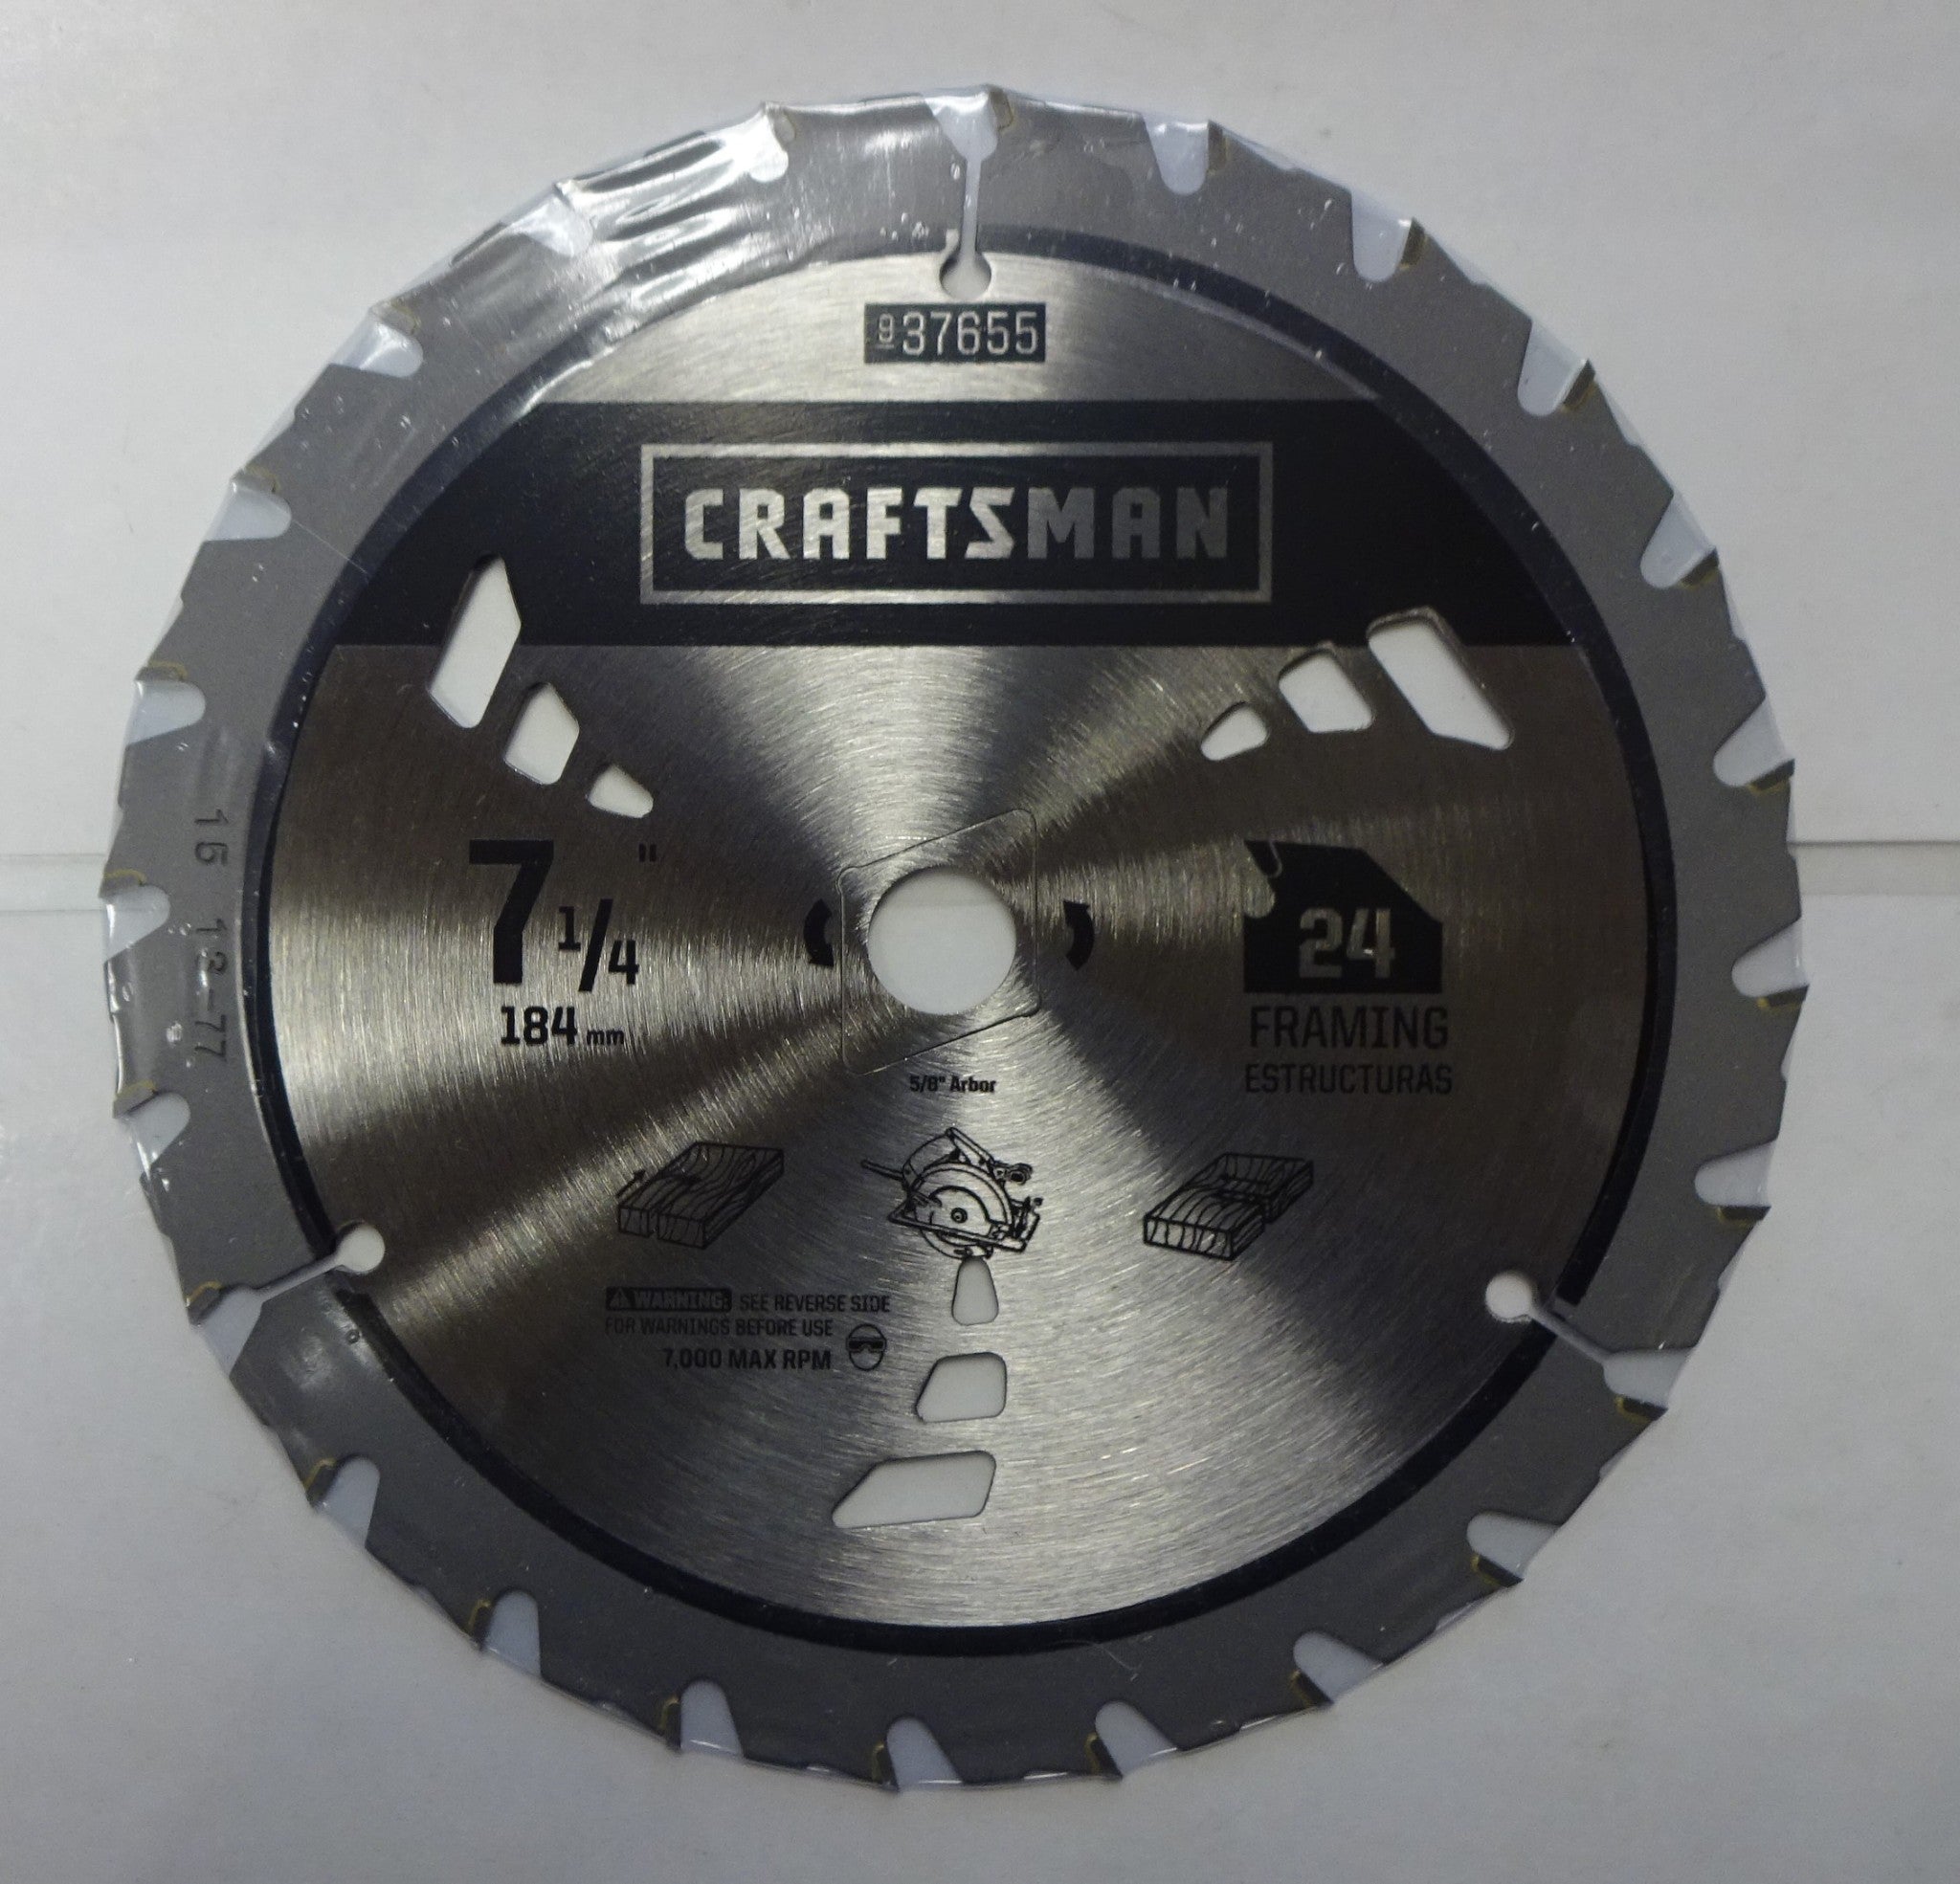 Craftsman 37655 7-1/4" x 24 Tooth Carbide Circular Saw Blade